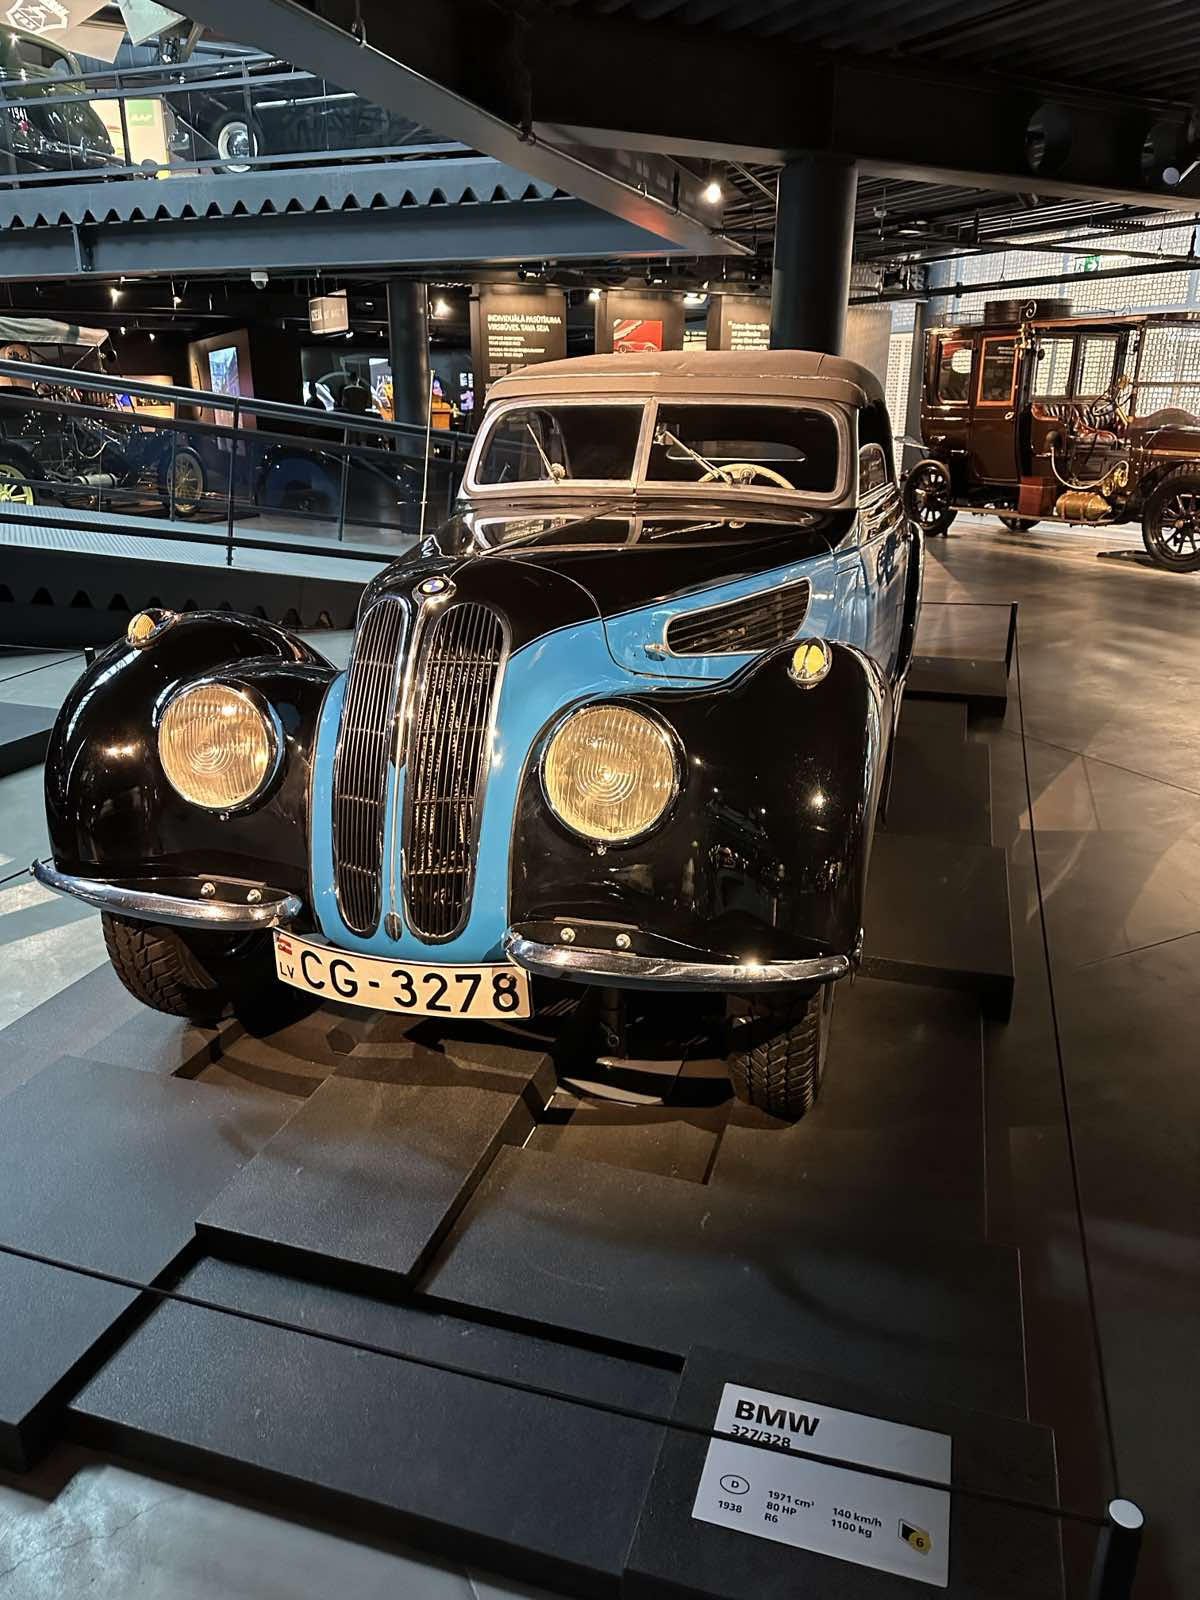 Η BMW του μεσοπολέμου 328 στο μουσείο